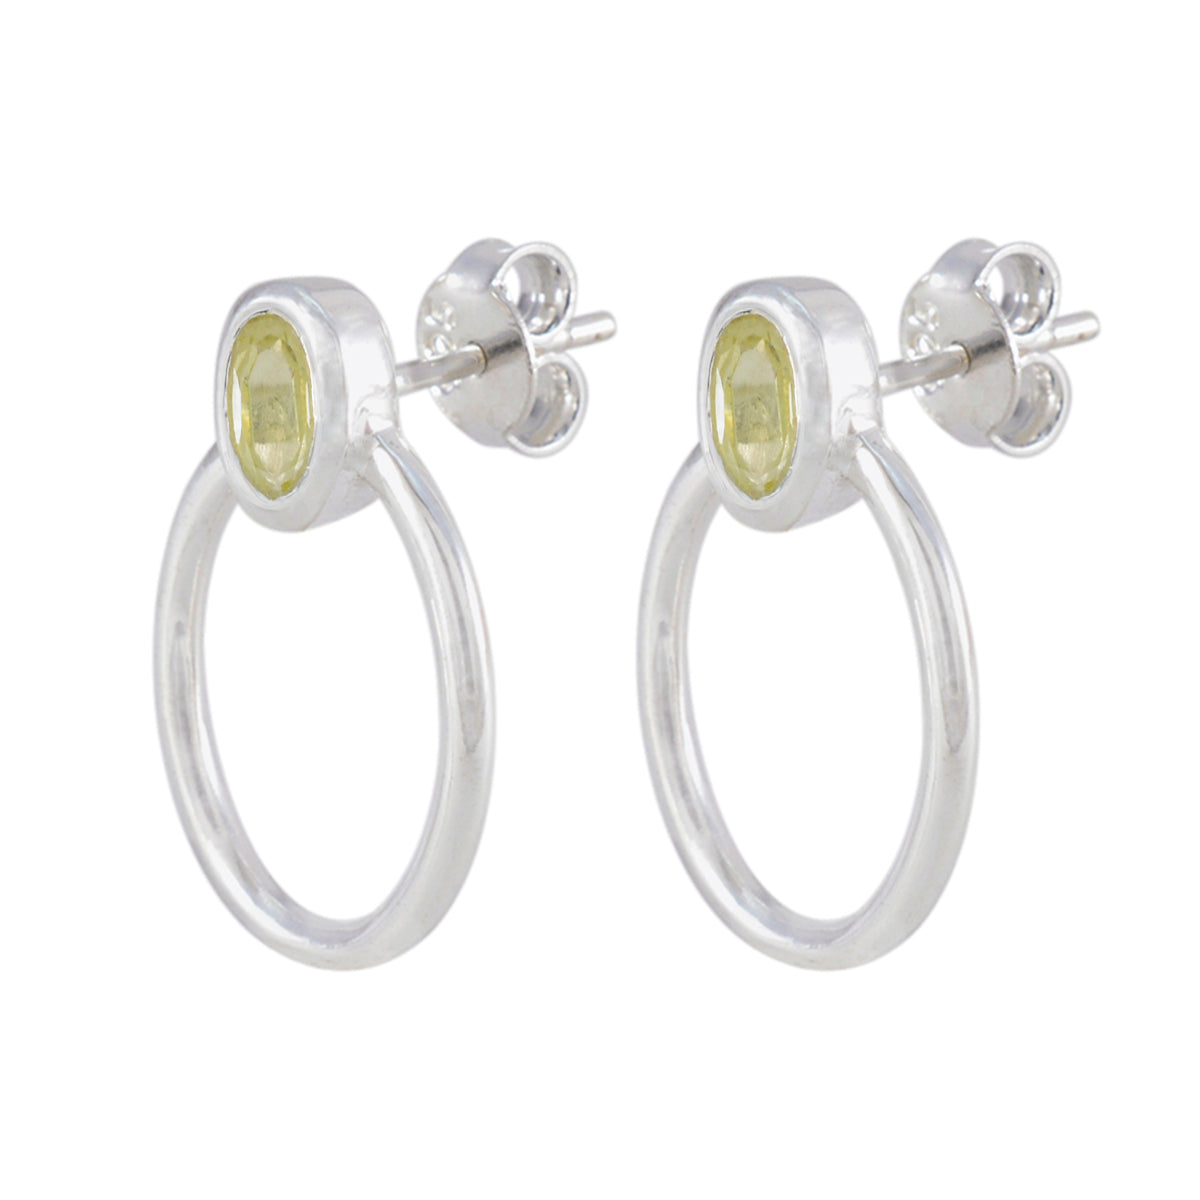 Riyo Fair 925 Sterling Silver Earring For Femme Lemon Quartz Earring Bezel Setting Yellow Earring Stud Earring